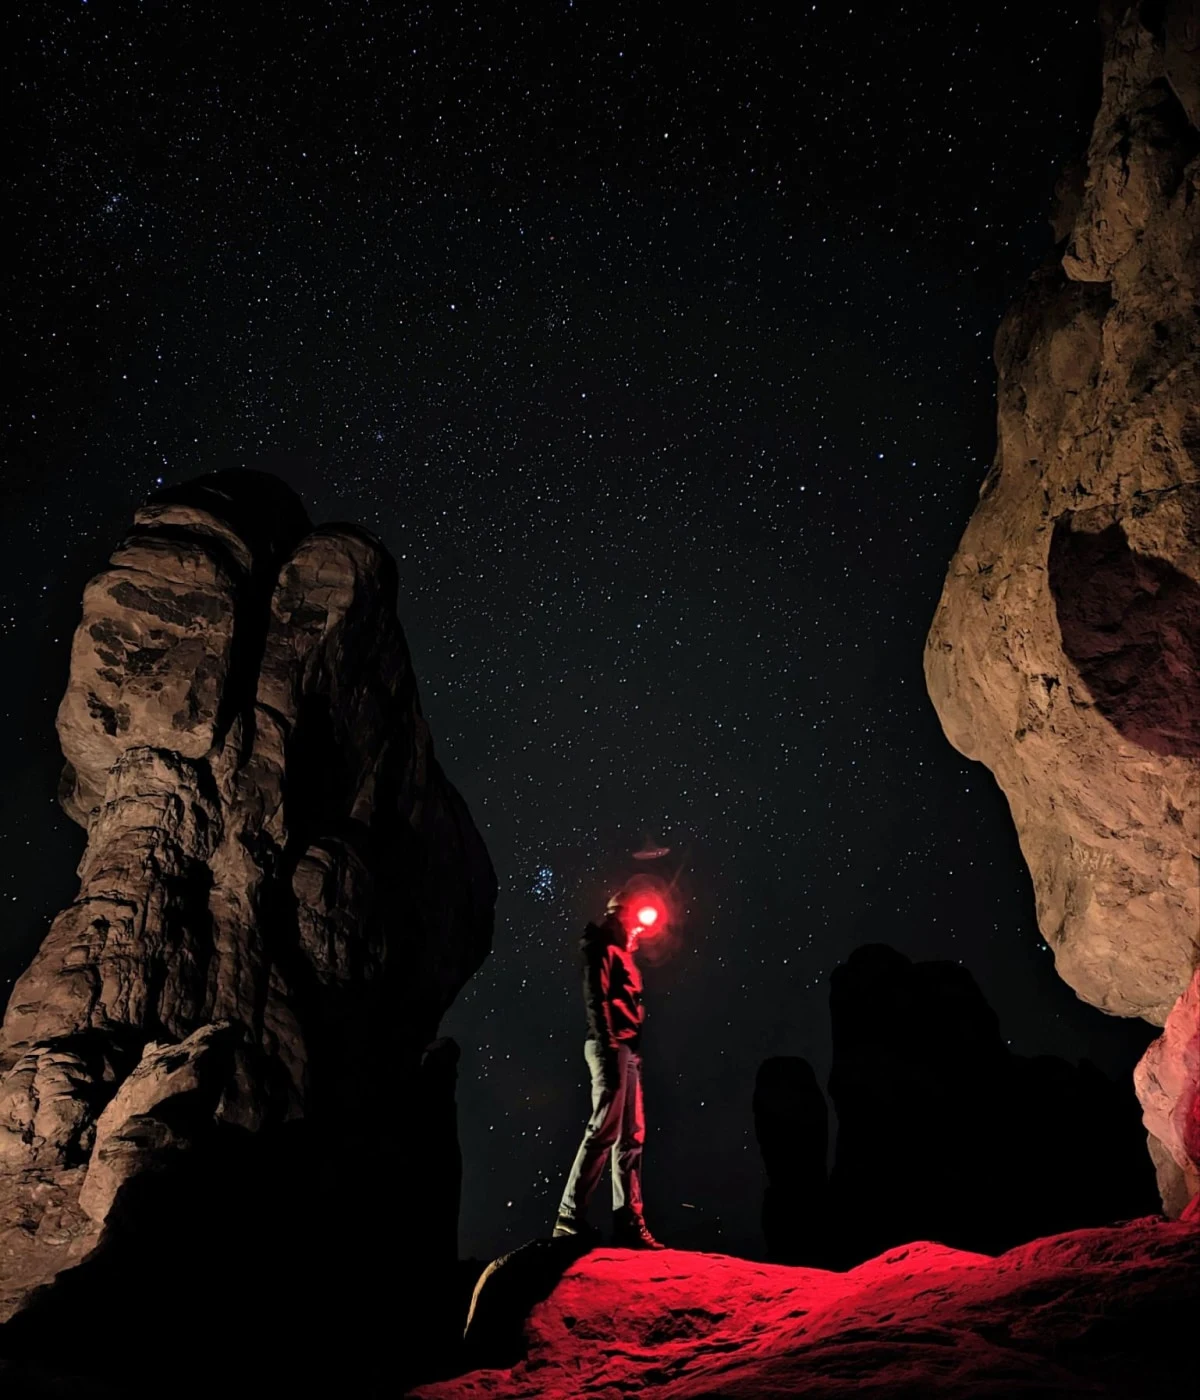 Zdjęcie osoby stojącej nocą wśród czerwonych skał. Pomimo słabego oświetlenia zdjęcie zawiera doskonałe szczegóły.